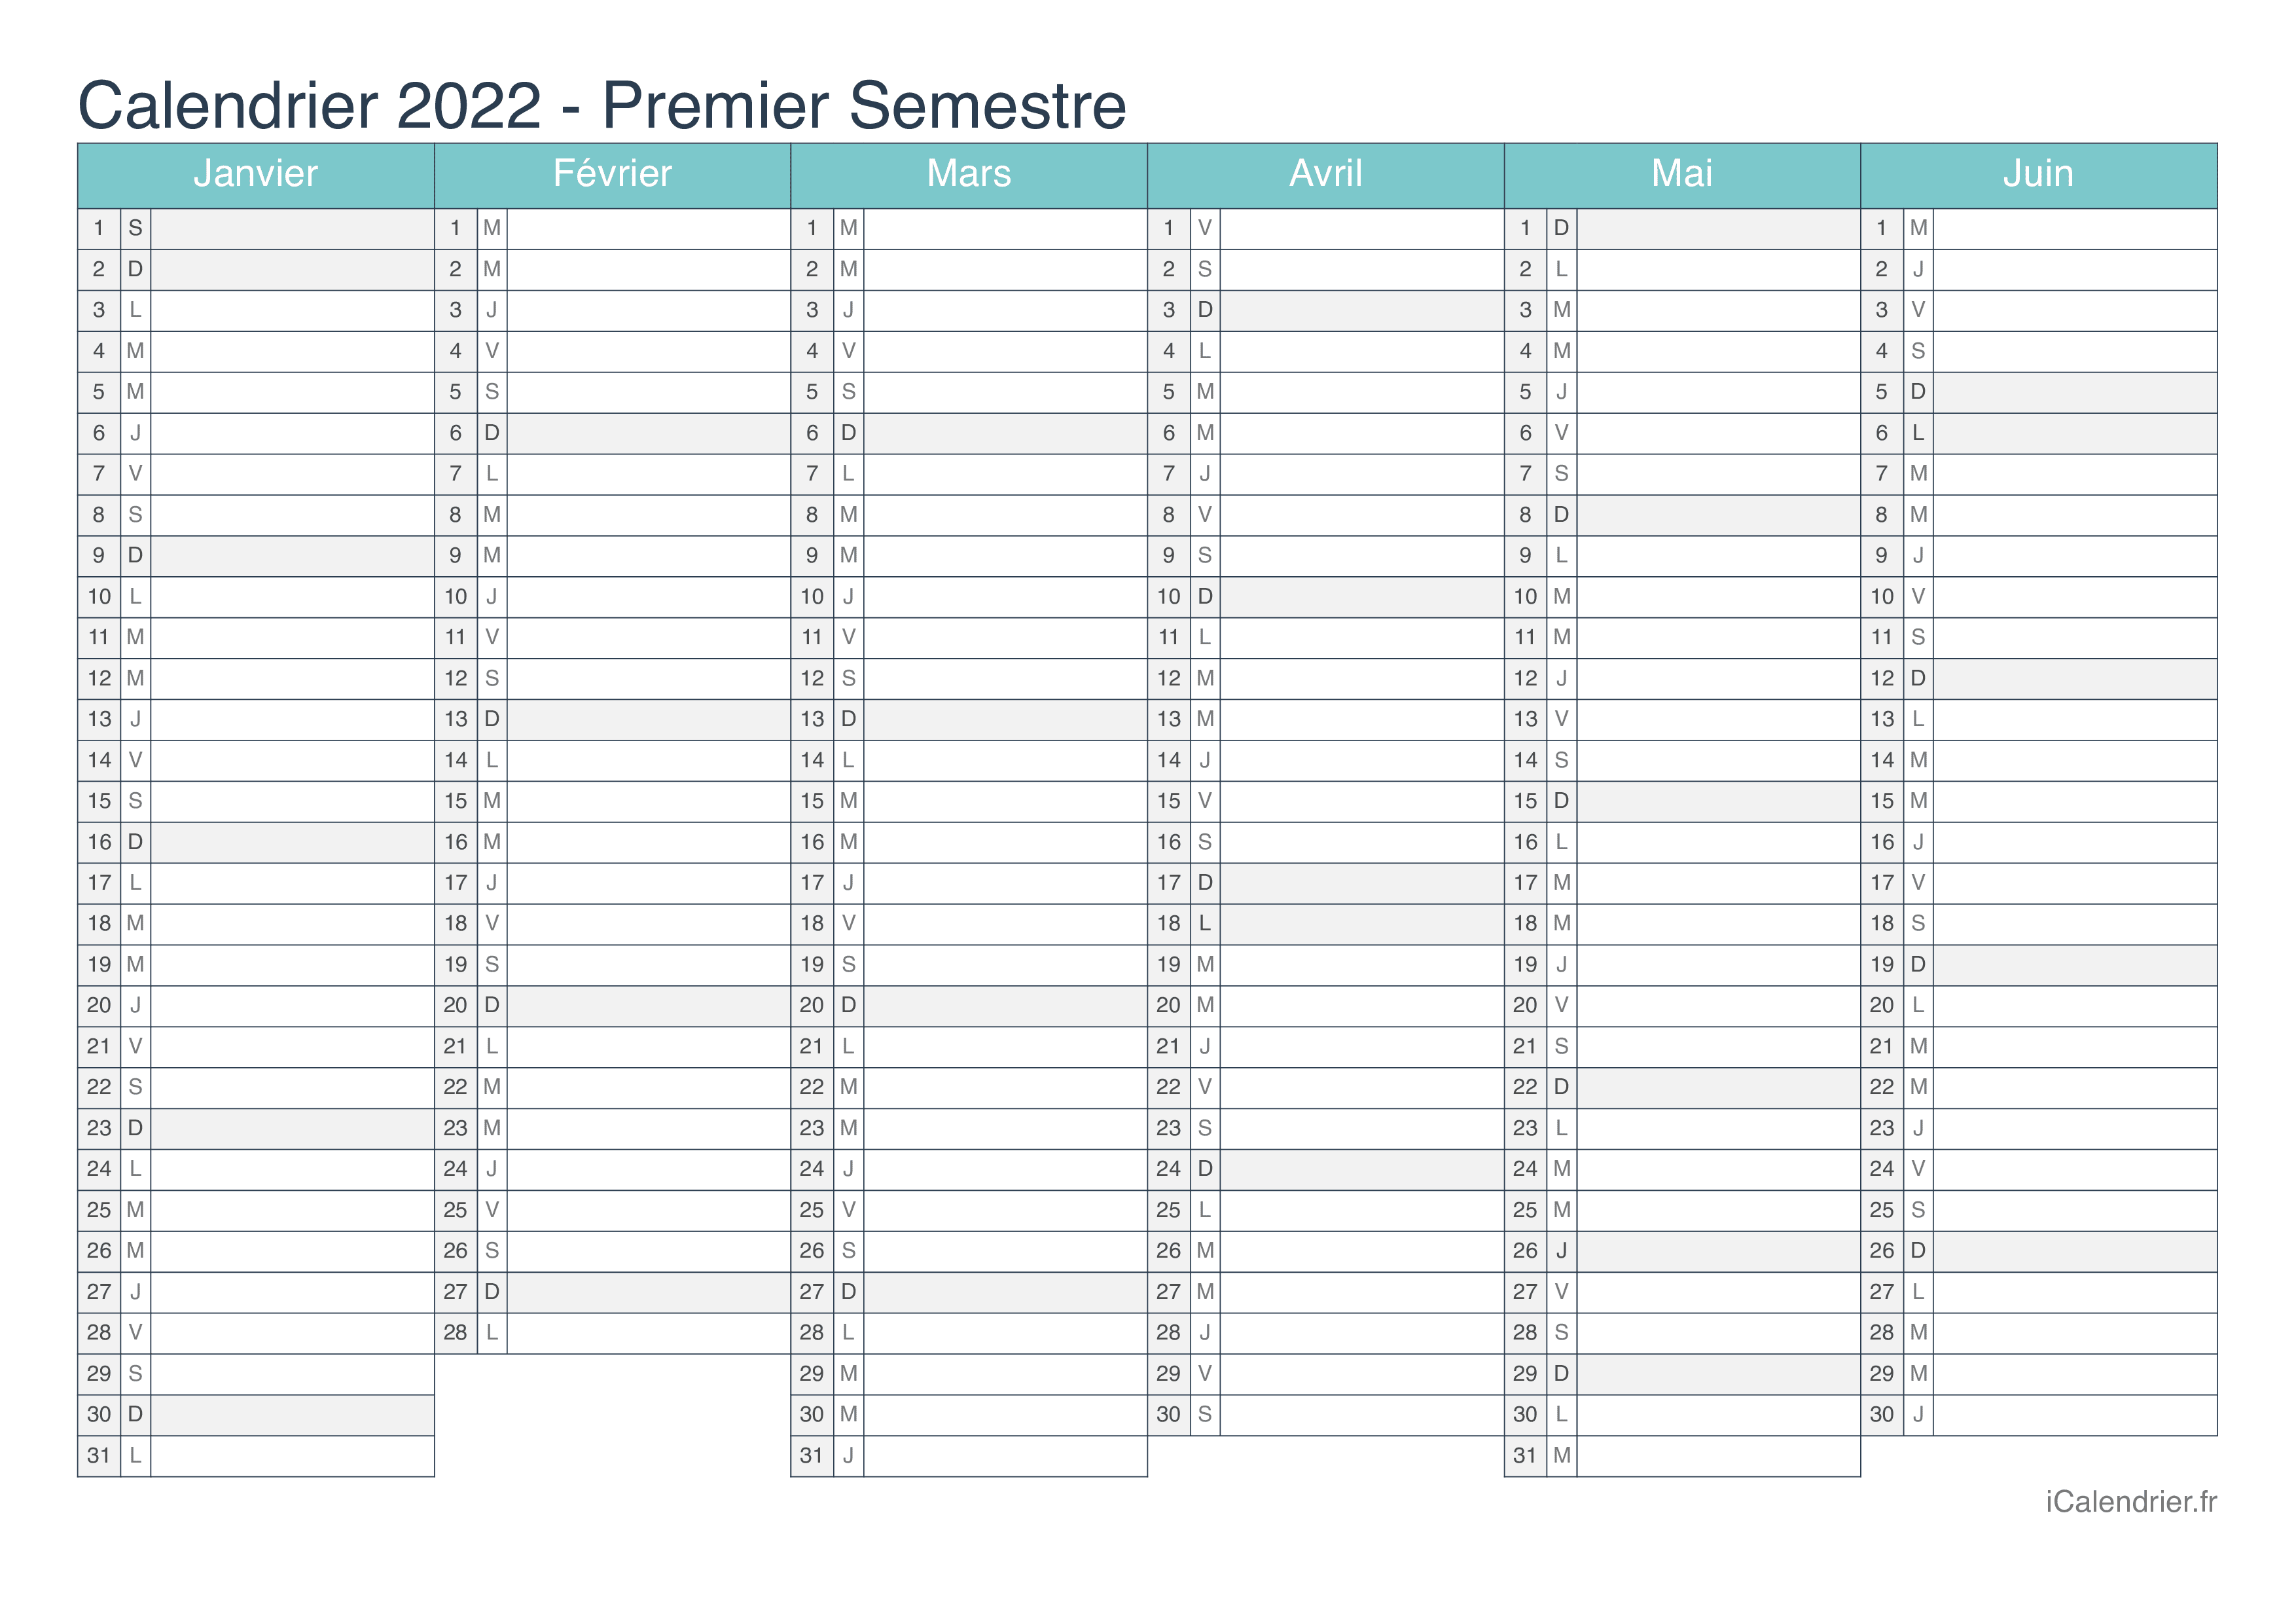 Calendrier Semainier 2022 à Imprimer Calendrier 2022 à imprimer PDF et Excel   iCalendrier